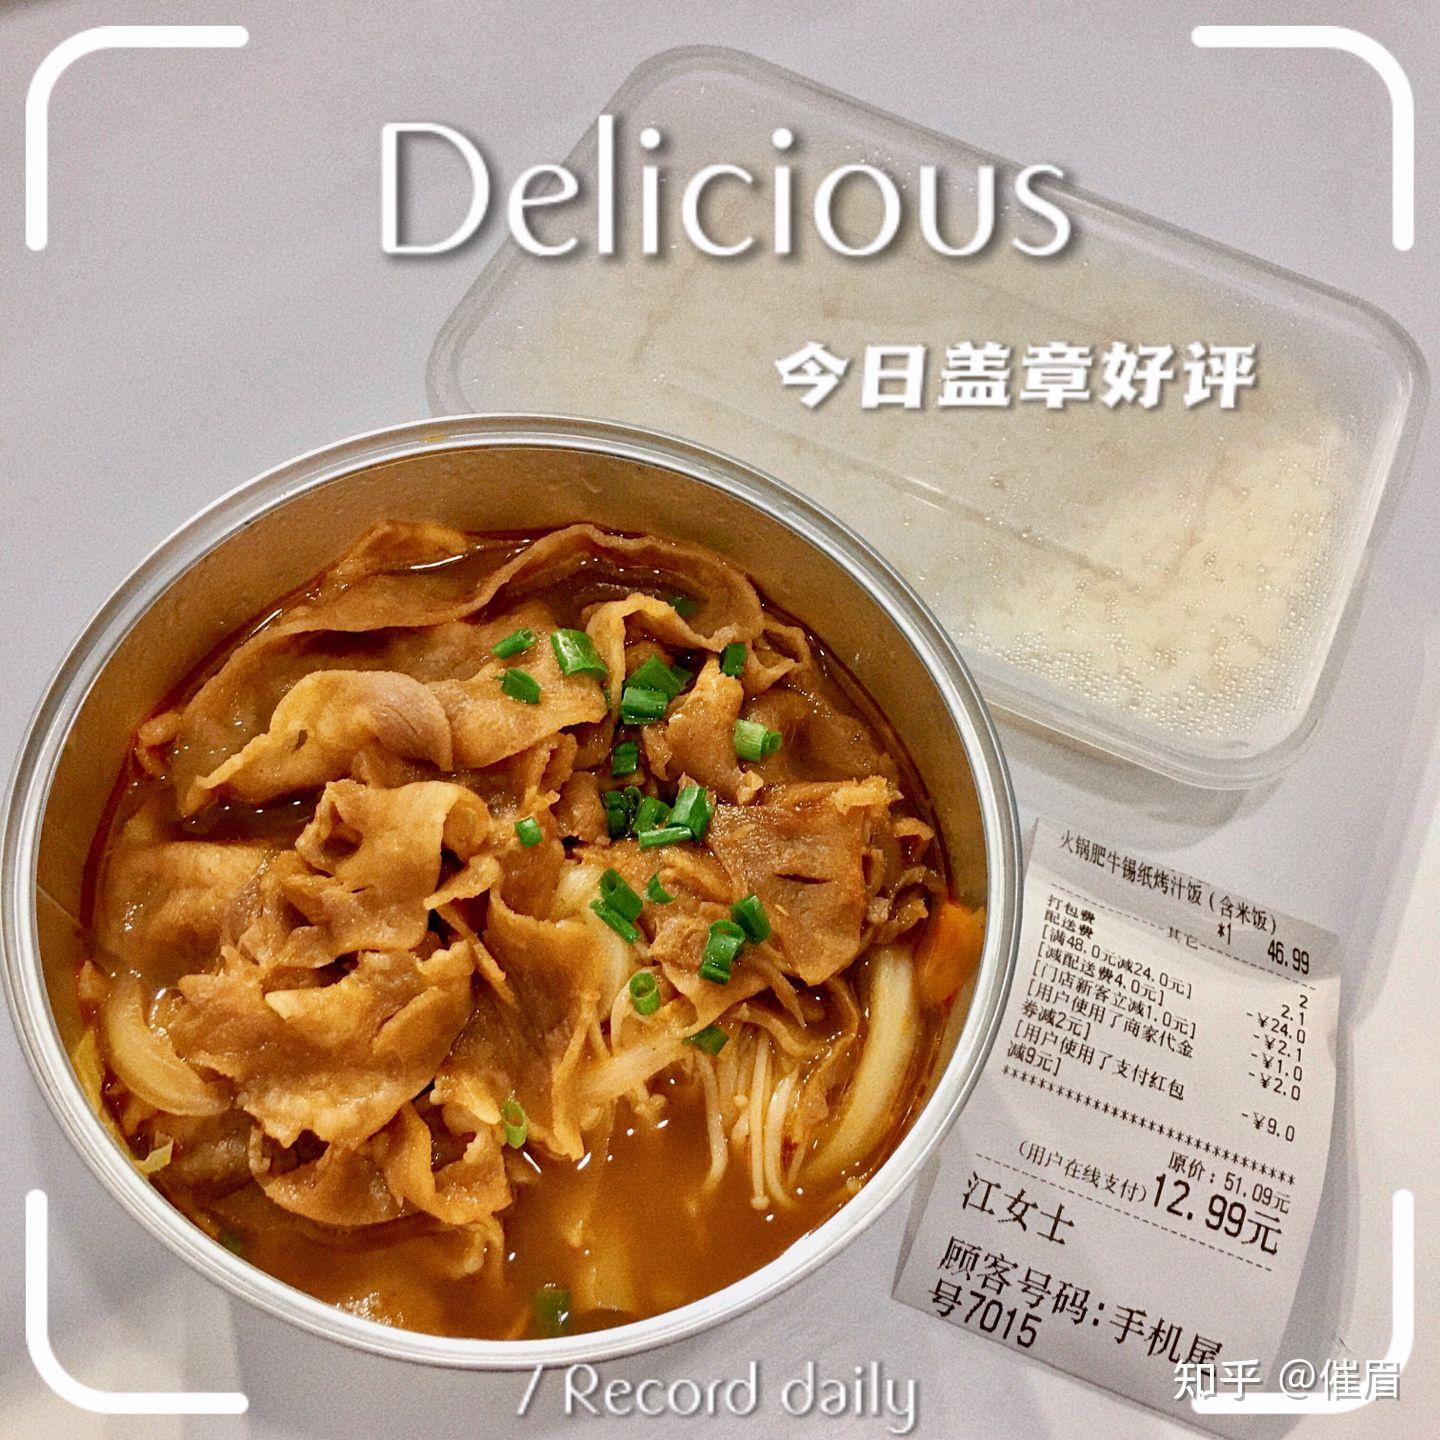 晚餐吃什么 - 斗图大会 - 蘑菇头、早餐、胖子、吃表情库 - 真正的斗图网站 - dou.yuanmazg.com